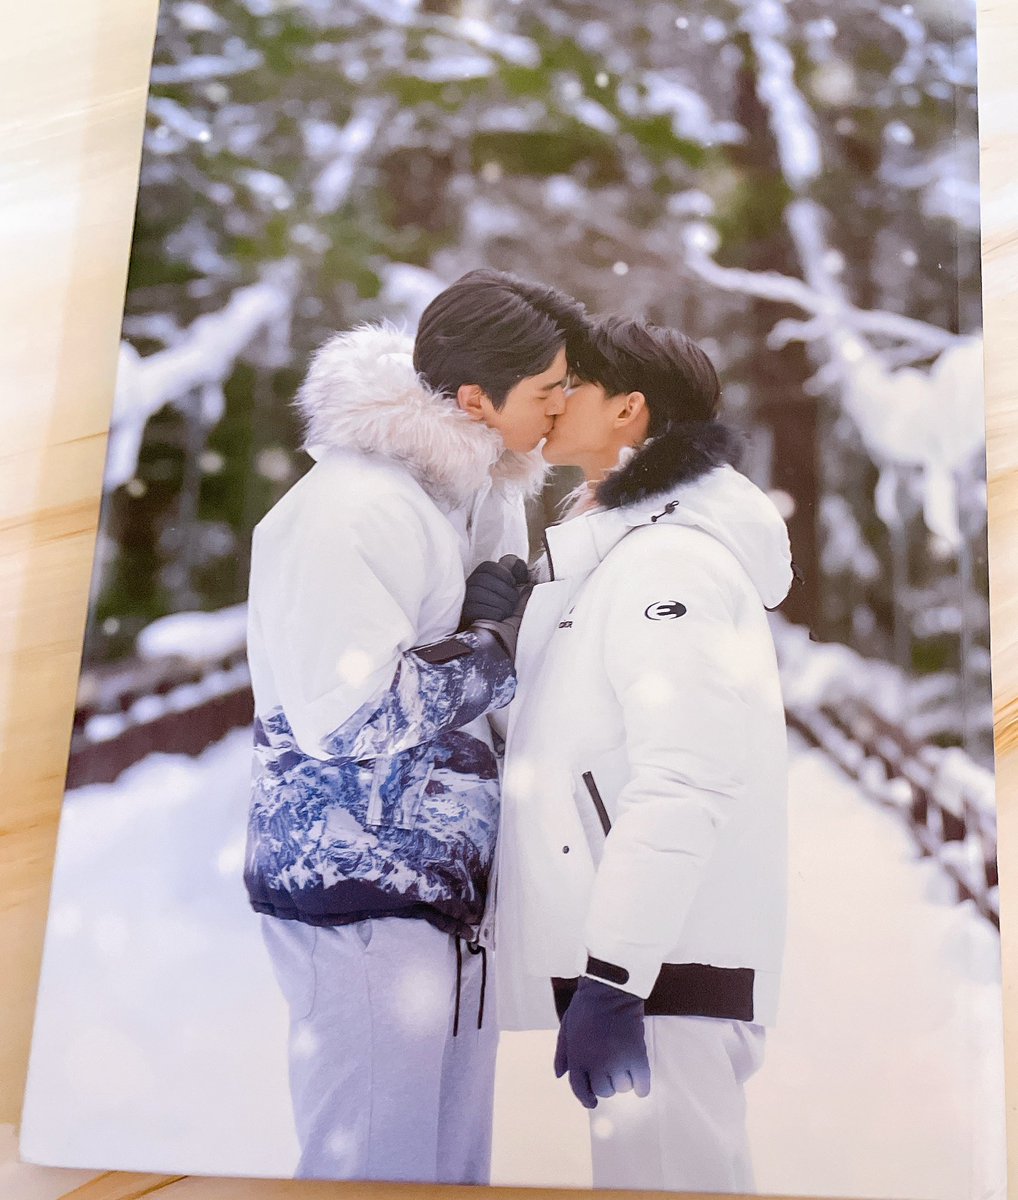 体調が悪すぎるので・・久しぶりにBMSSの写真集を見ました💚🧡

JaFirstの2人は日本の景色も雪も似合いますね❄️

やはりJaFirstは格好良くて素敵ですね🥰

#JaFirst